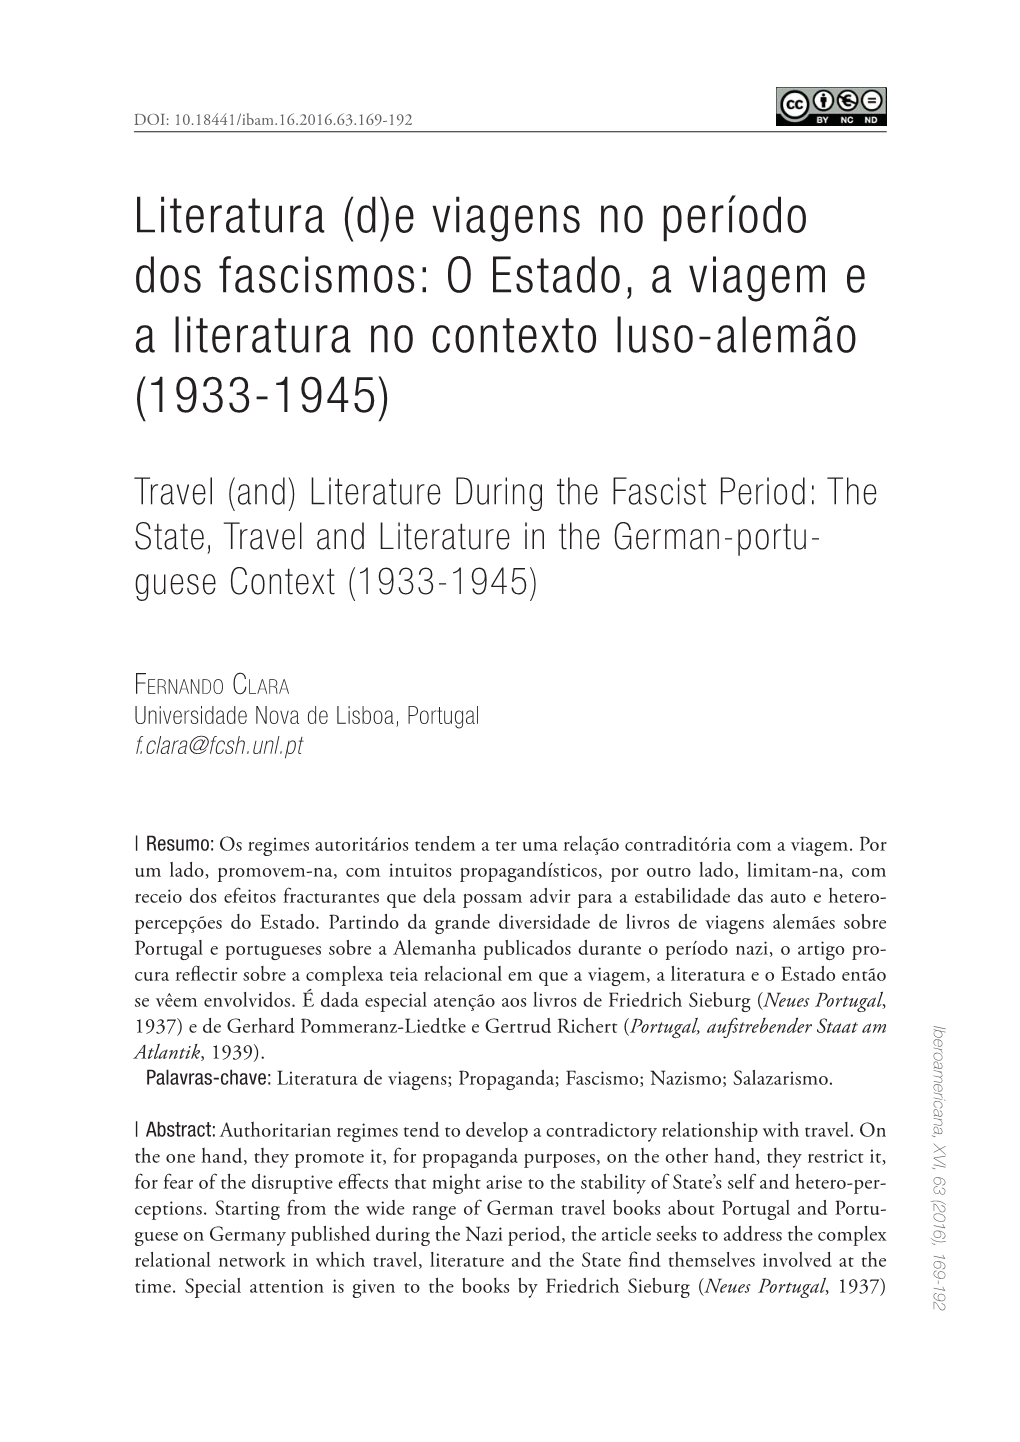 Literatura De Viagens; Propaganda; Fascismo; Nazismo; Salazarismo